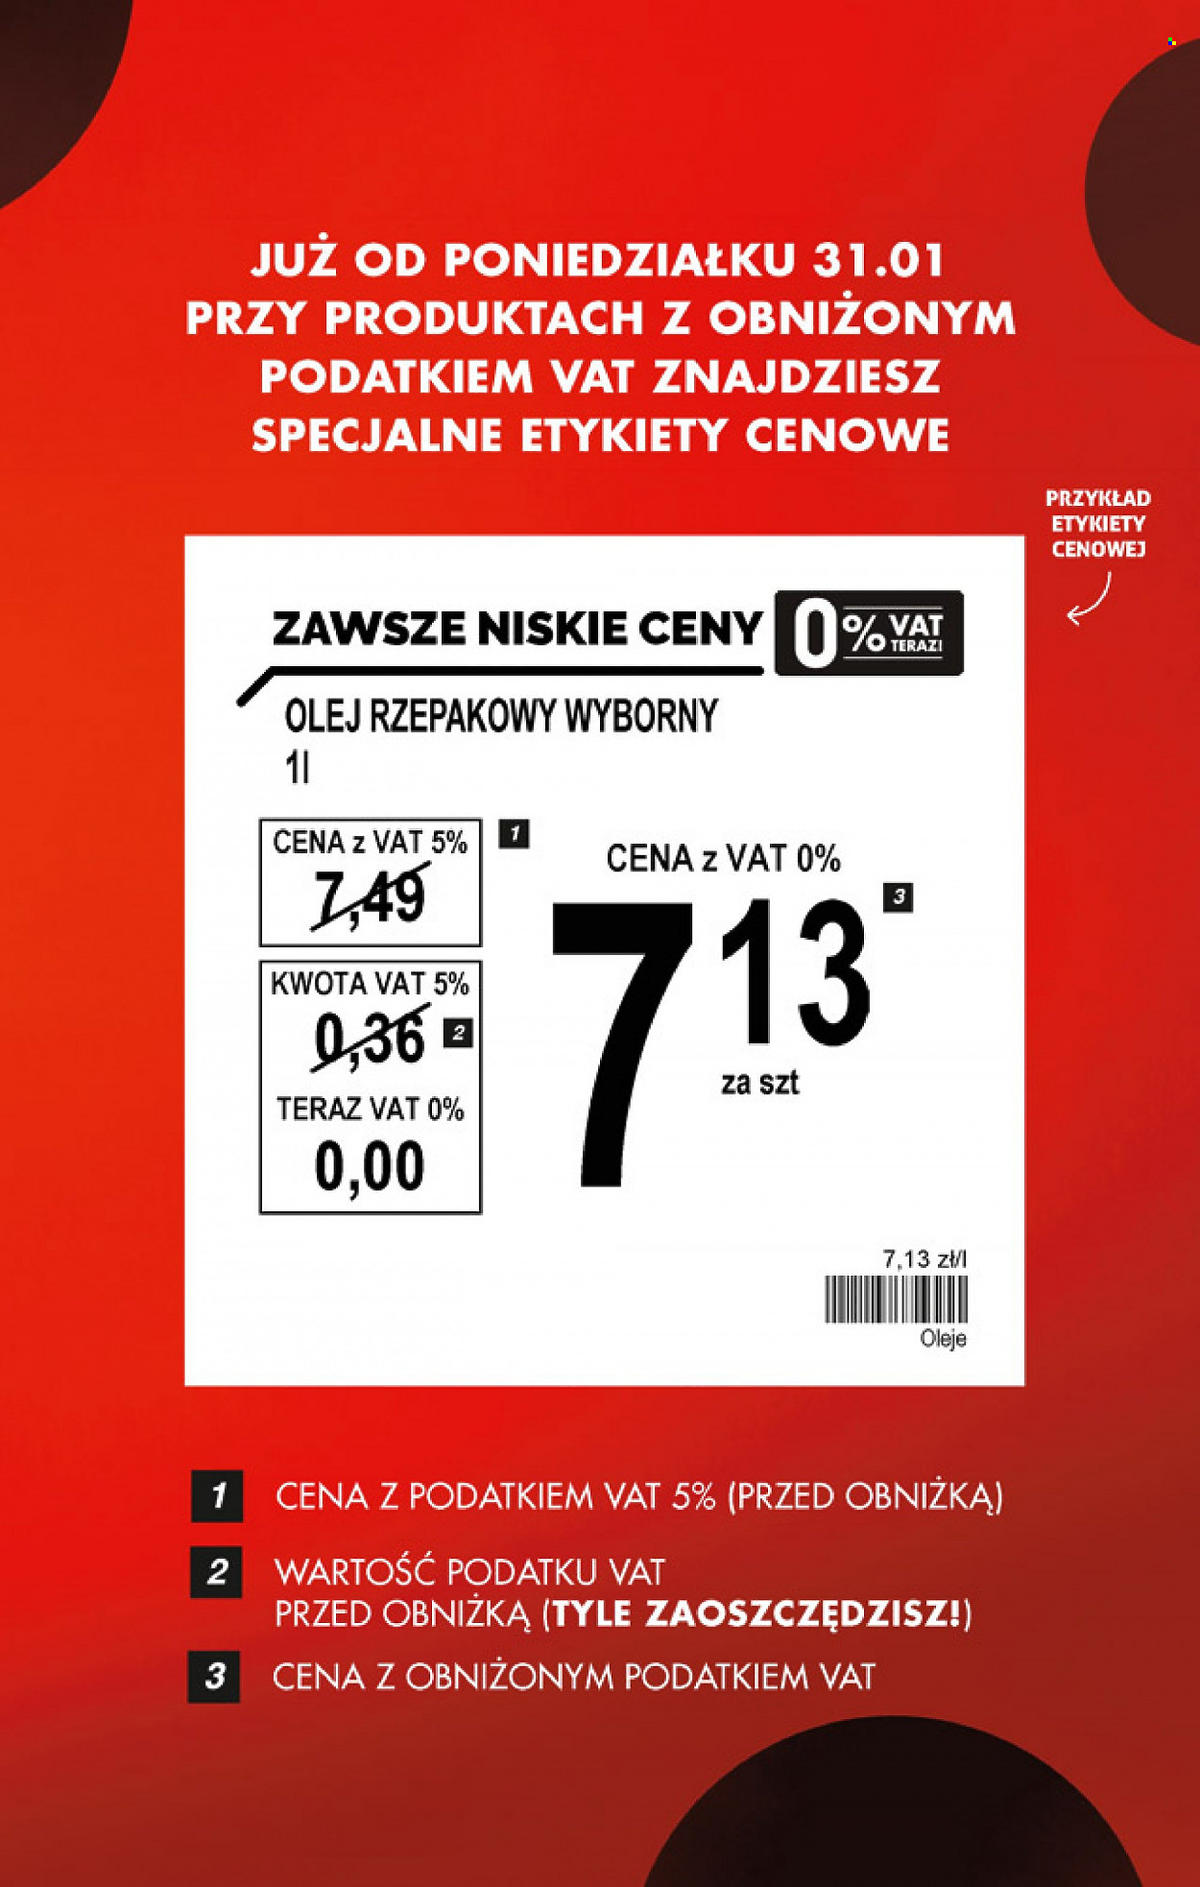 Mięso  i olej w Biedronce za mniej niż 7 zł, a masło tylko 5 zł. Sieć oznacza ceny bez VAT.